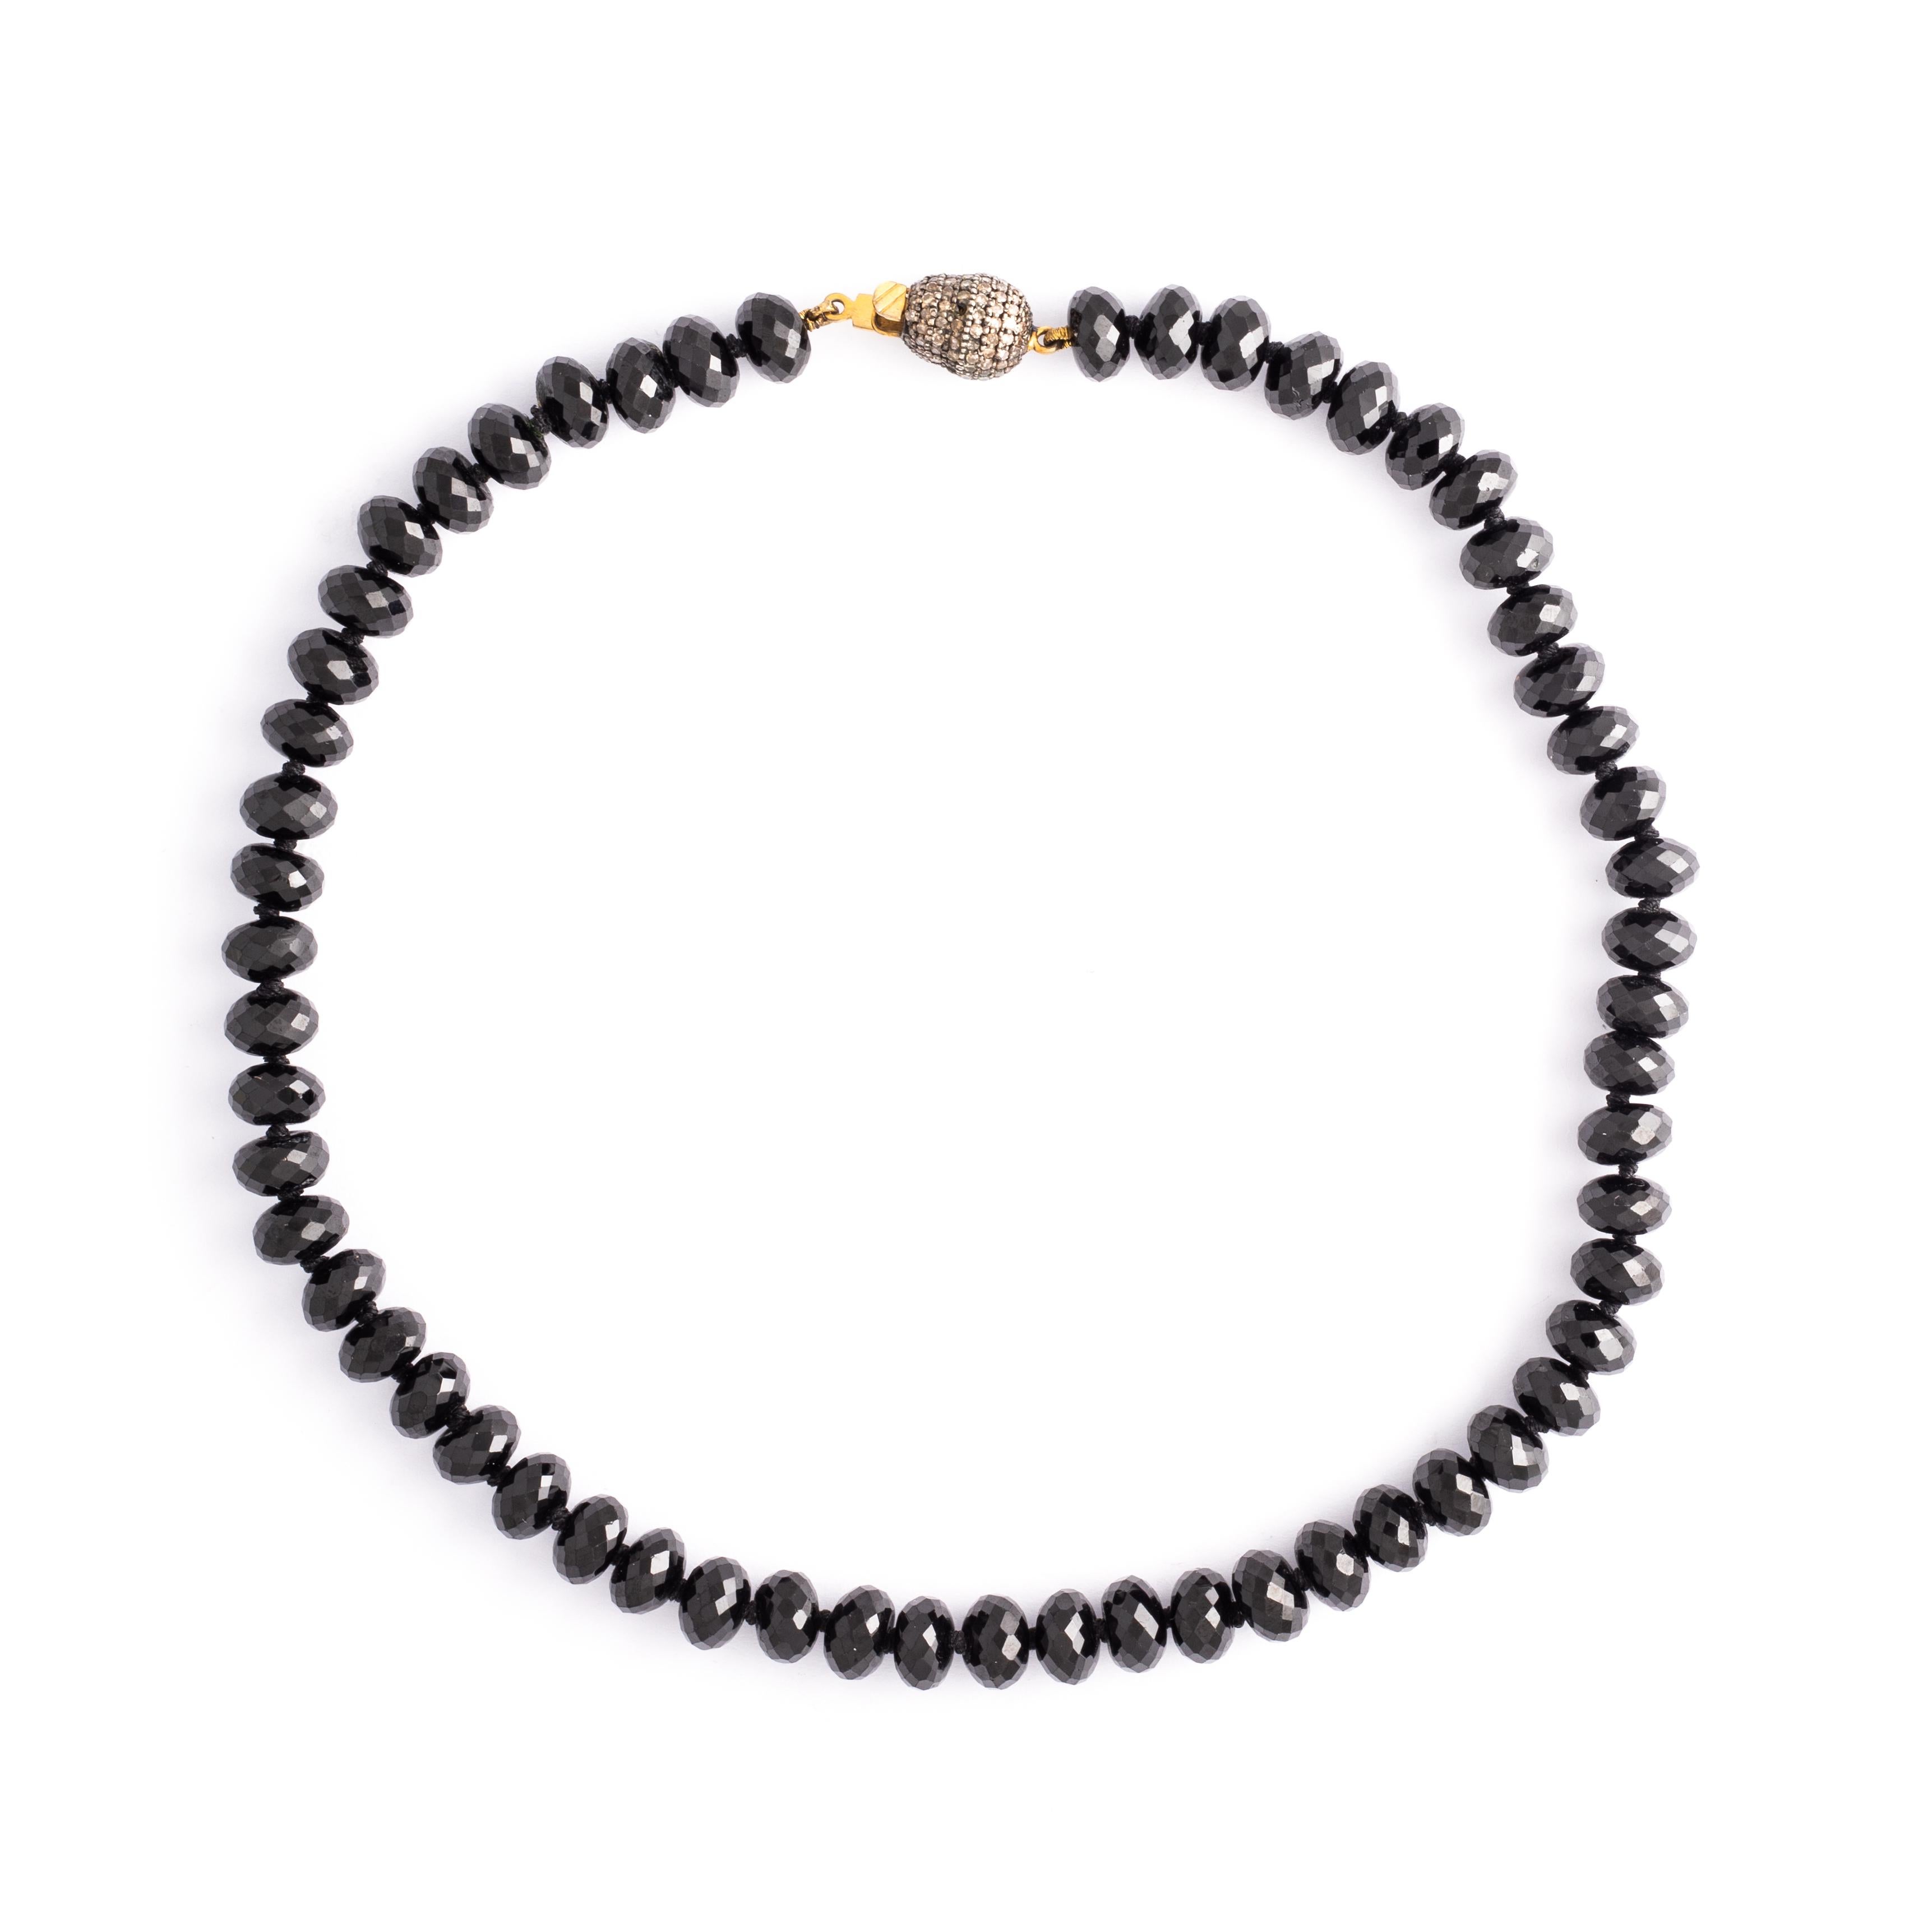 Brauner Diamantverschluss Onyx mit mehreren Facetten Perlenkette.

Gesamtlänge: etwa 41,00 Zentimeter (16,14 Zoll).
Gesamtgewicht: 61,78 Gramm.